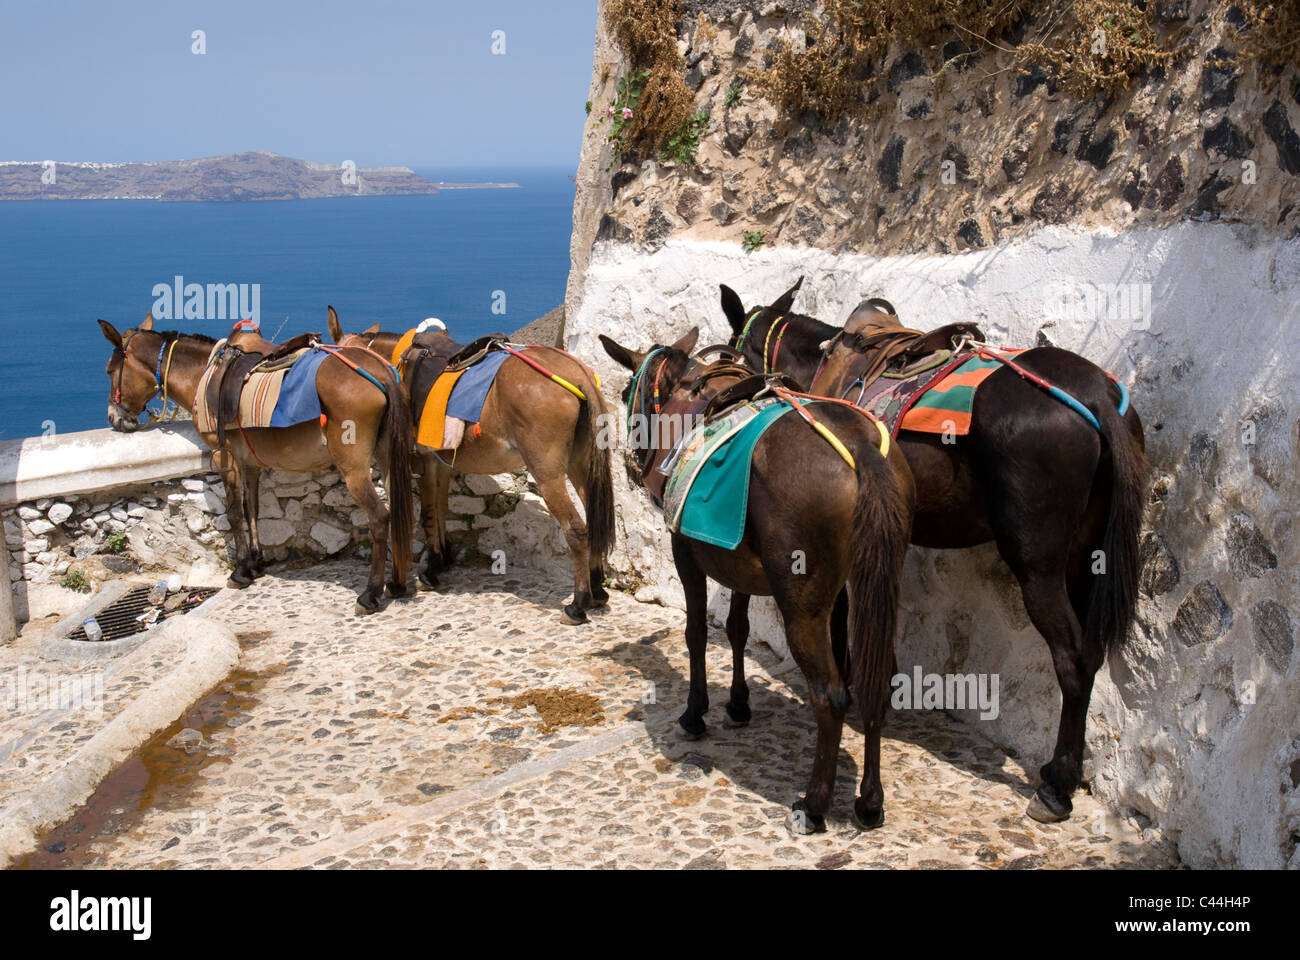 Grèce, Santorin, Fira. Mules ayant une sieste avant de descendre un chemin d'accès à un port en dessous de la falaise, ville de Fira, Santorin Banque D'Images